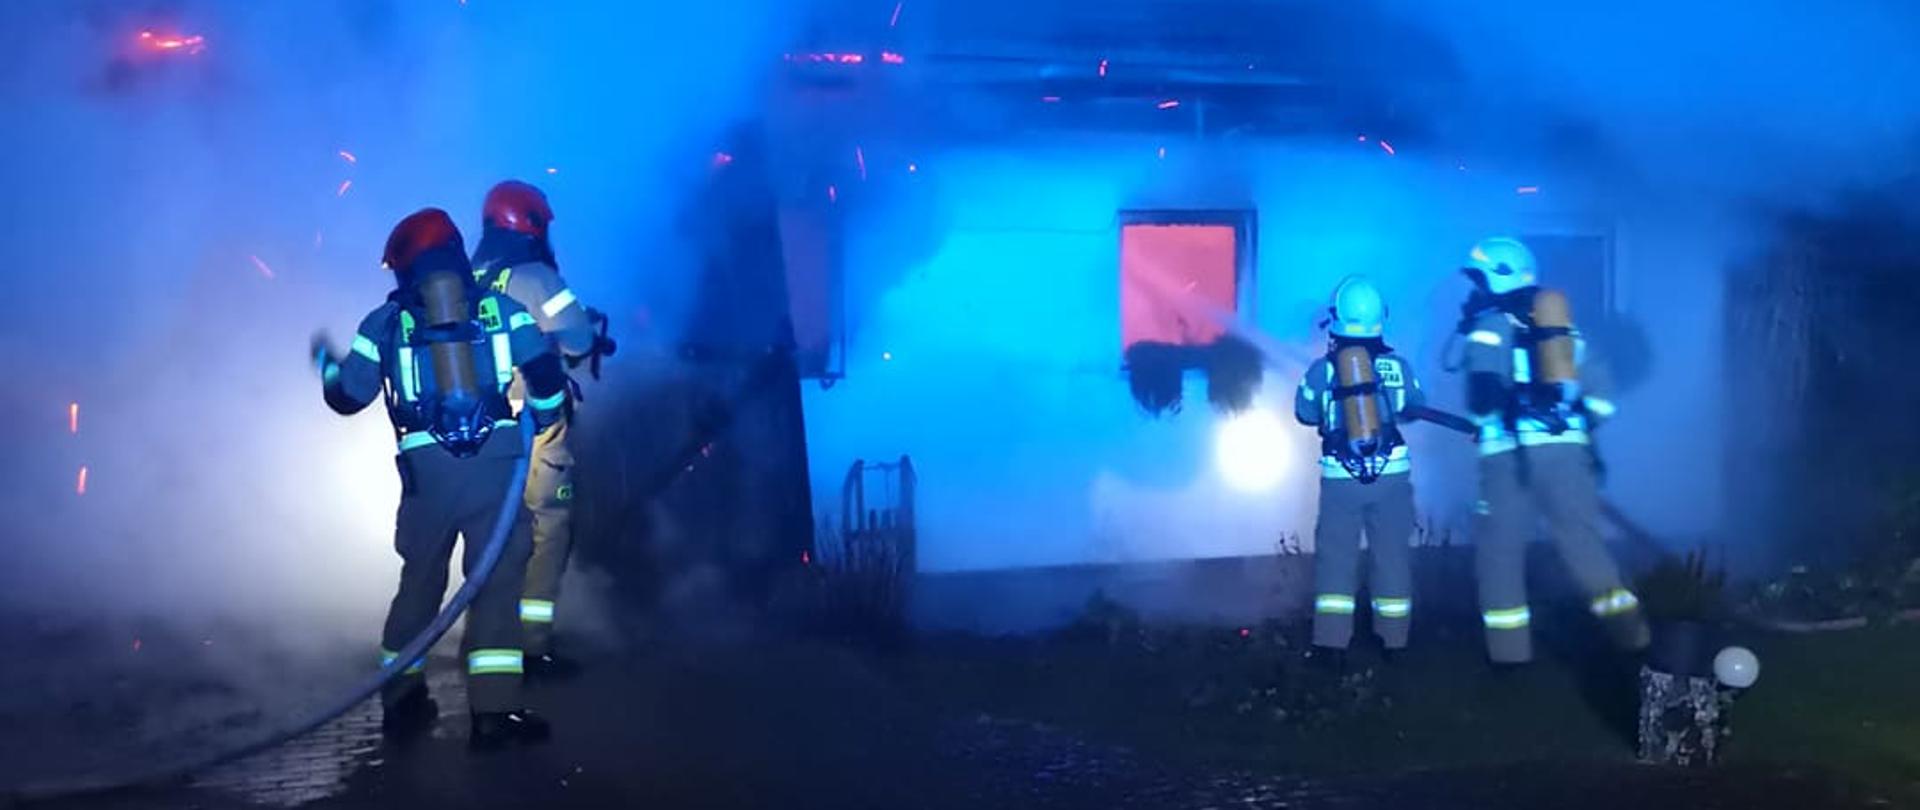 Zdjęcie przedstawia pożar budynku gospodarczego, wydobywa się z niego ogień i dym. Przed budynkiem stoją dwie roty strażaków - dwóch po lewej stronie zdjęcia (w czerwonych hełmach) i dwóch po prawej (W białych hełmach). Trzymają oni w rękach prądownice wodne wraz z wężami. Strażacy są ubraniu w ubranie specjalne, hełmy i sprzęt ochrony układu oddechowego. Zdjęcie wykonano nocą.